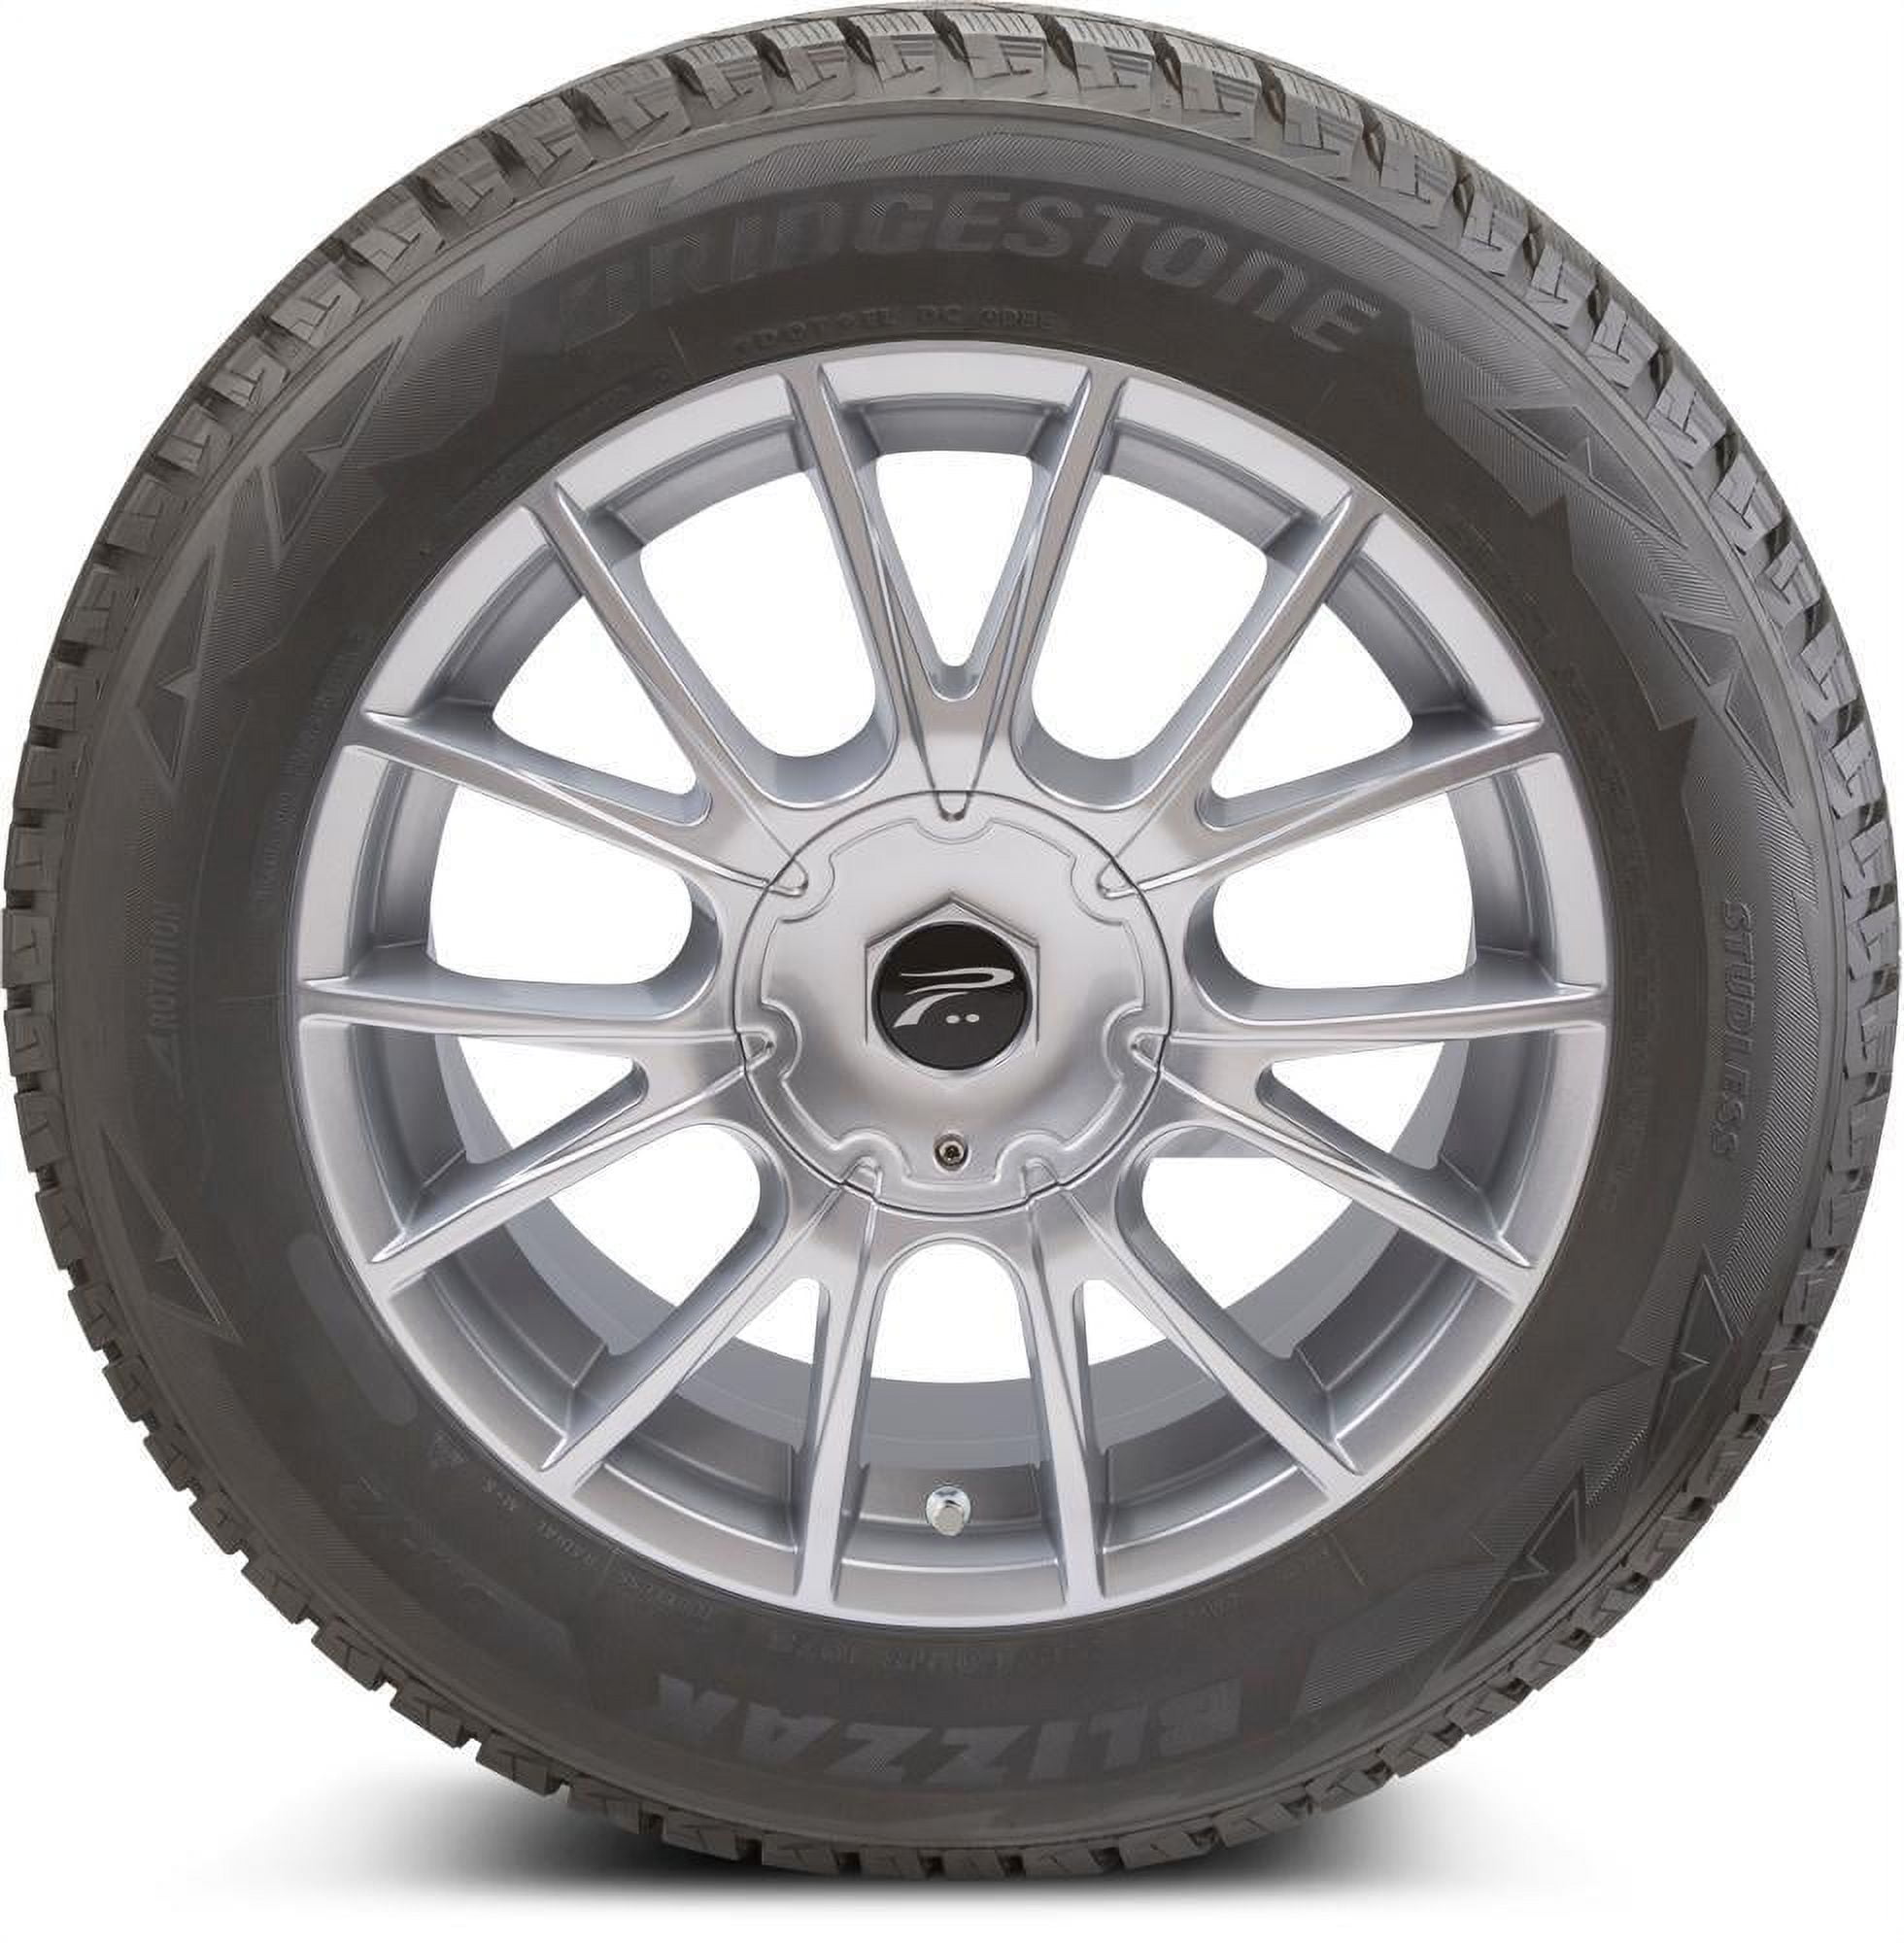 Bridgestone blizzak dm-v2 LT285/60R18 116R bsw winter tire | Autoreifen